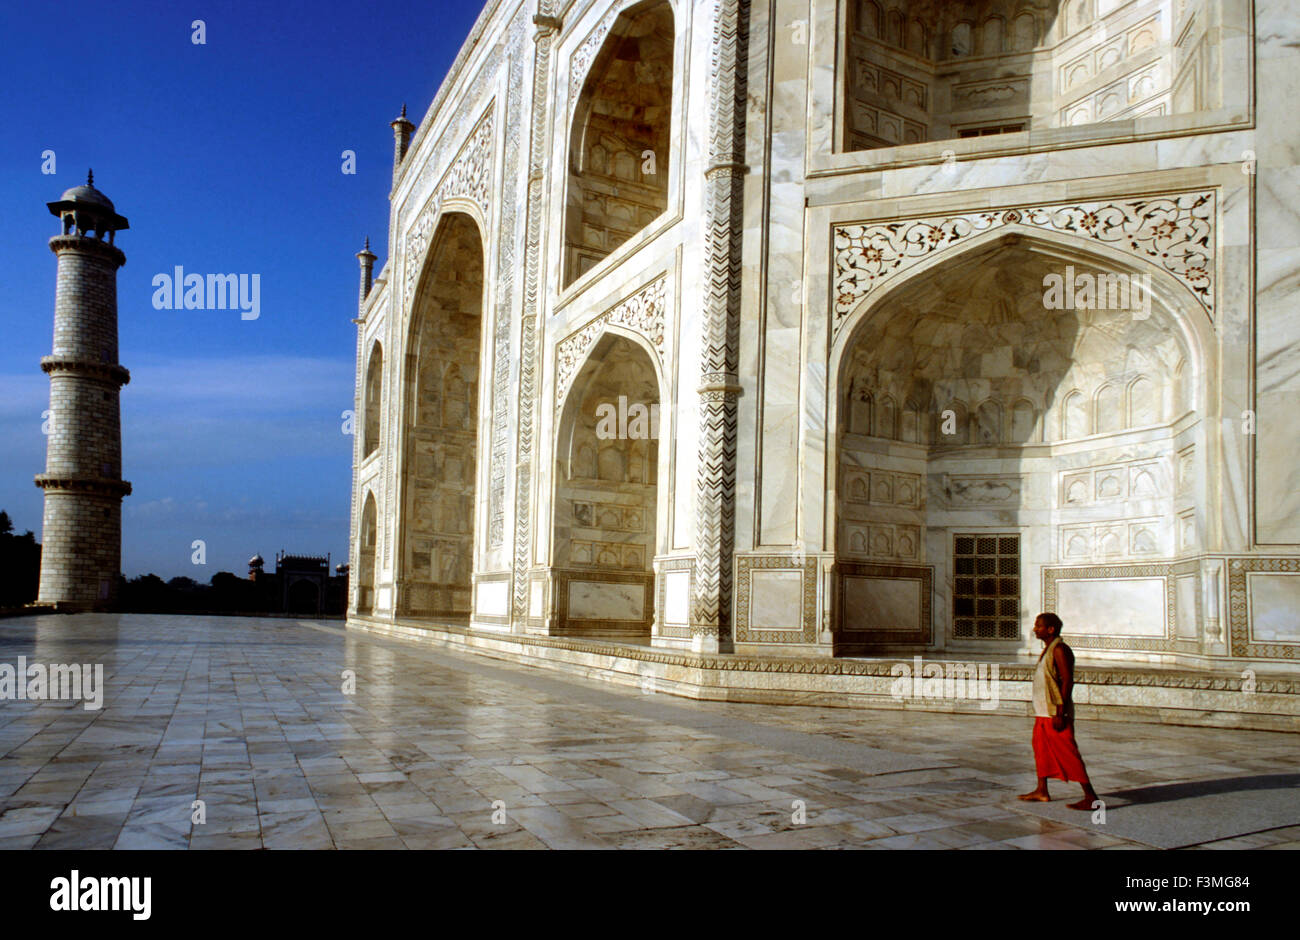 Agra, Uttar Pradesh. Taj Mahal in Fluss Yamuna, Agra, Indien Taj Mahal ist ein Mausoleum befindet sich in Agra, Indien, von Moghul-Kaiser Shah Jahan in Erinnerung an seine Lieblingsfrau Mumtaz Mahal erbaut. Das Taj Mahal gilt als das schönste Beispiel der Mughal Architektur, ein Stil, die Elemente aus osmanischen, persischen, indischen verbindet, und islamischen Baustilen. Im Jahr 1983 wurde das Taj Mahal wurde zum UNESCO-Weltkulturerbe und als "das Juwel der maurischer Kunst in Indien und eine der allgemein bewundert Meisterwerke des Naturerbes der Welt." Stockfoto